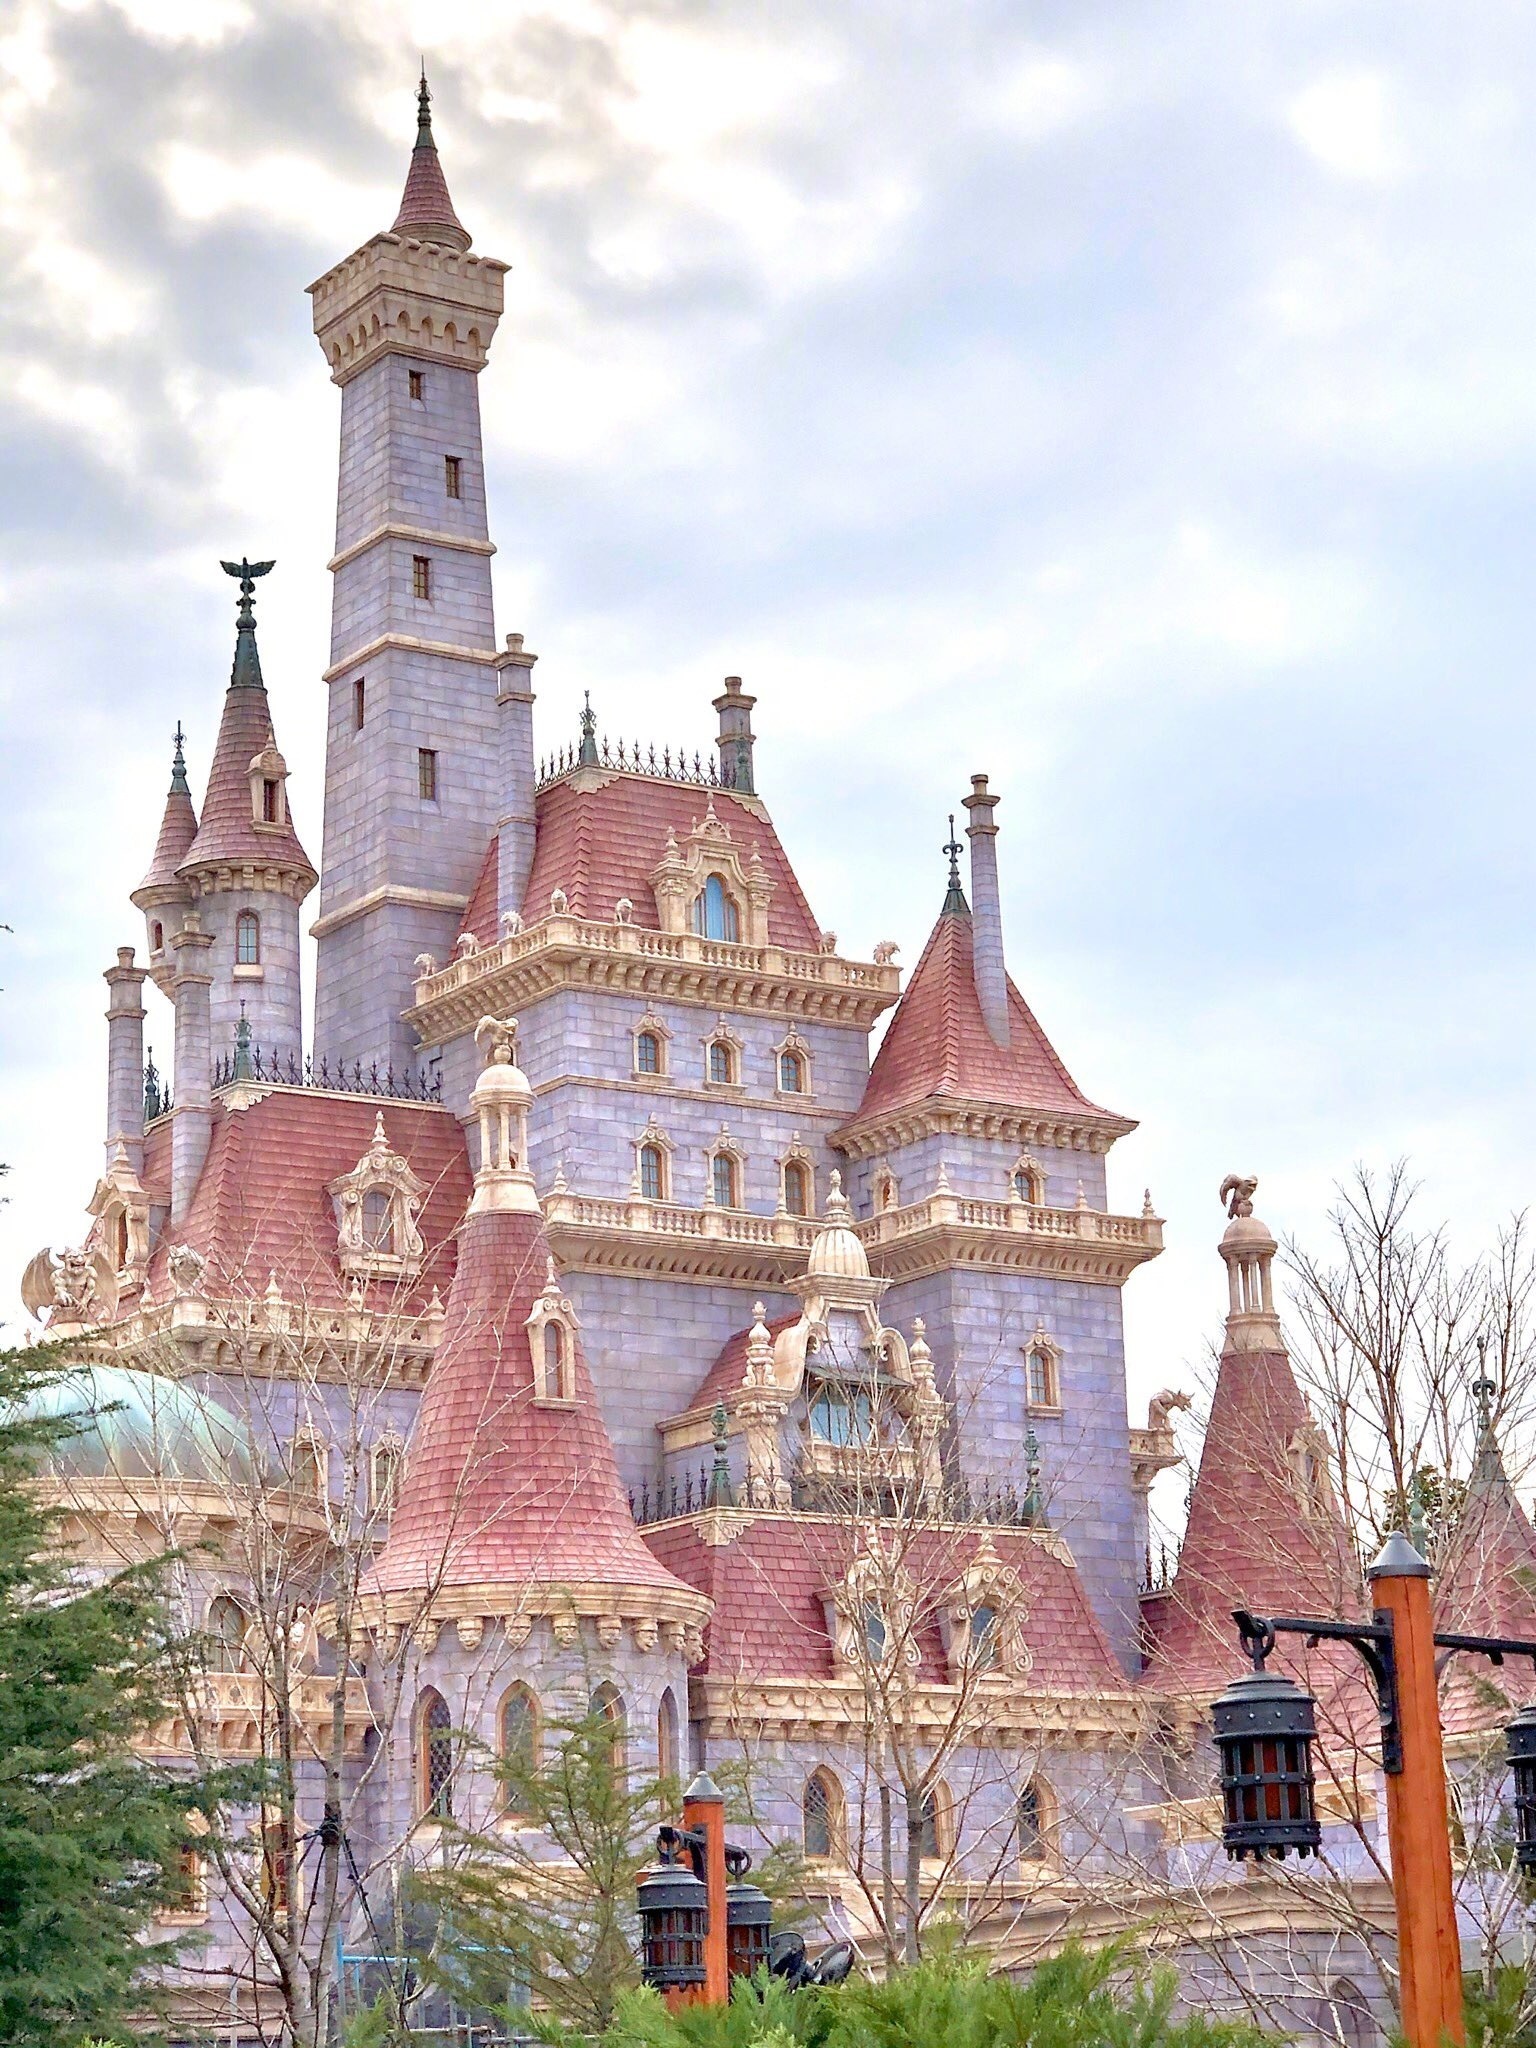 日本东京迪士尼乐园《美女与野兽》主题城堡